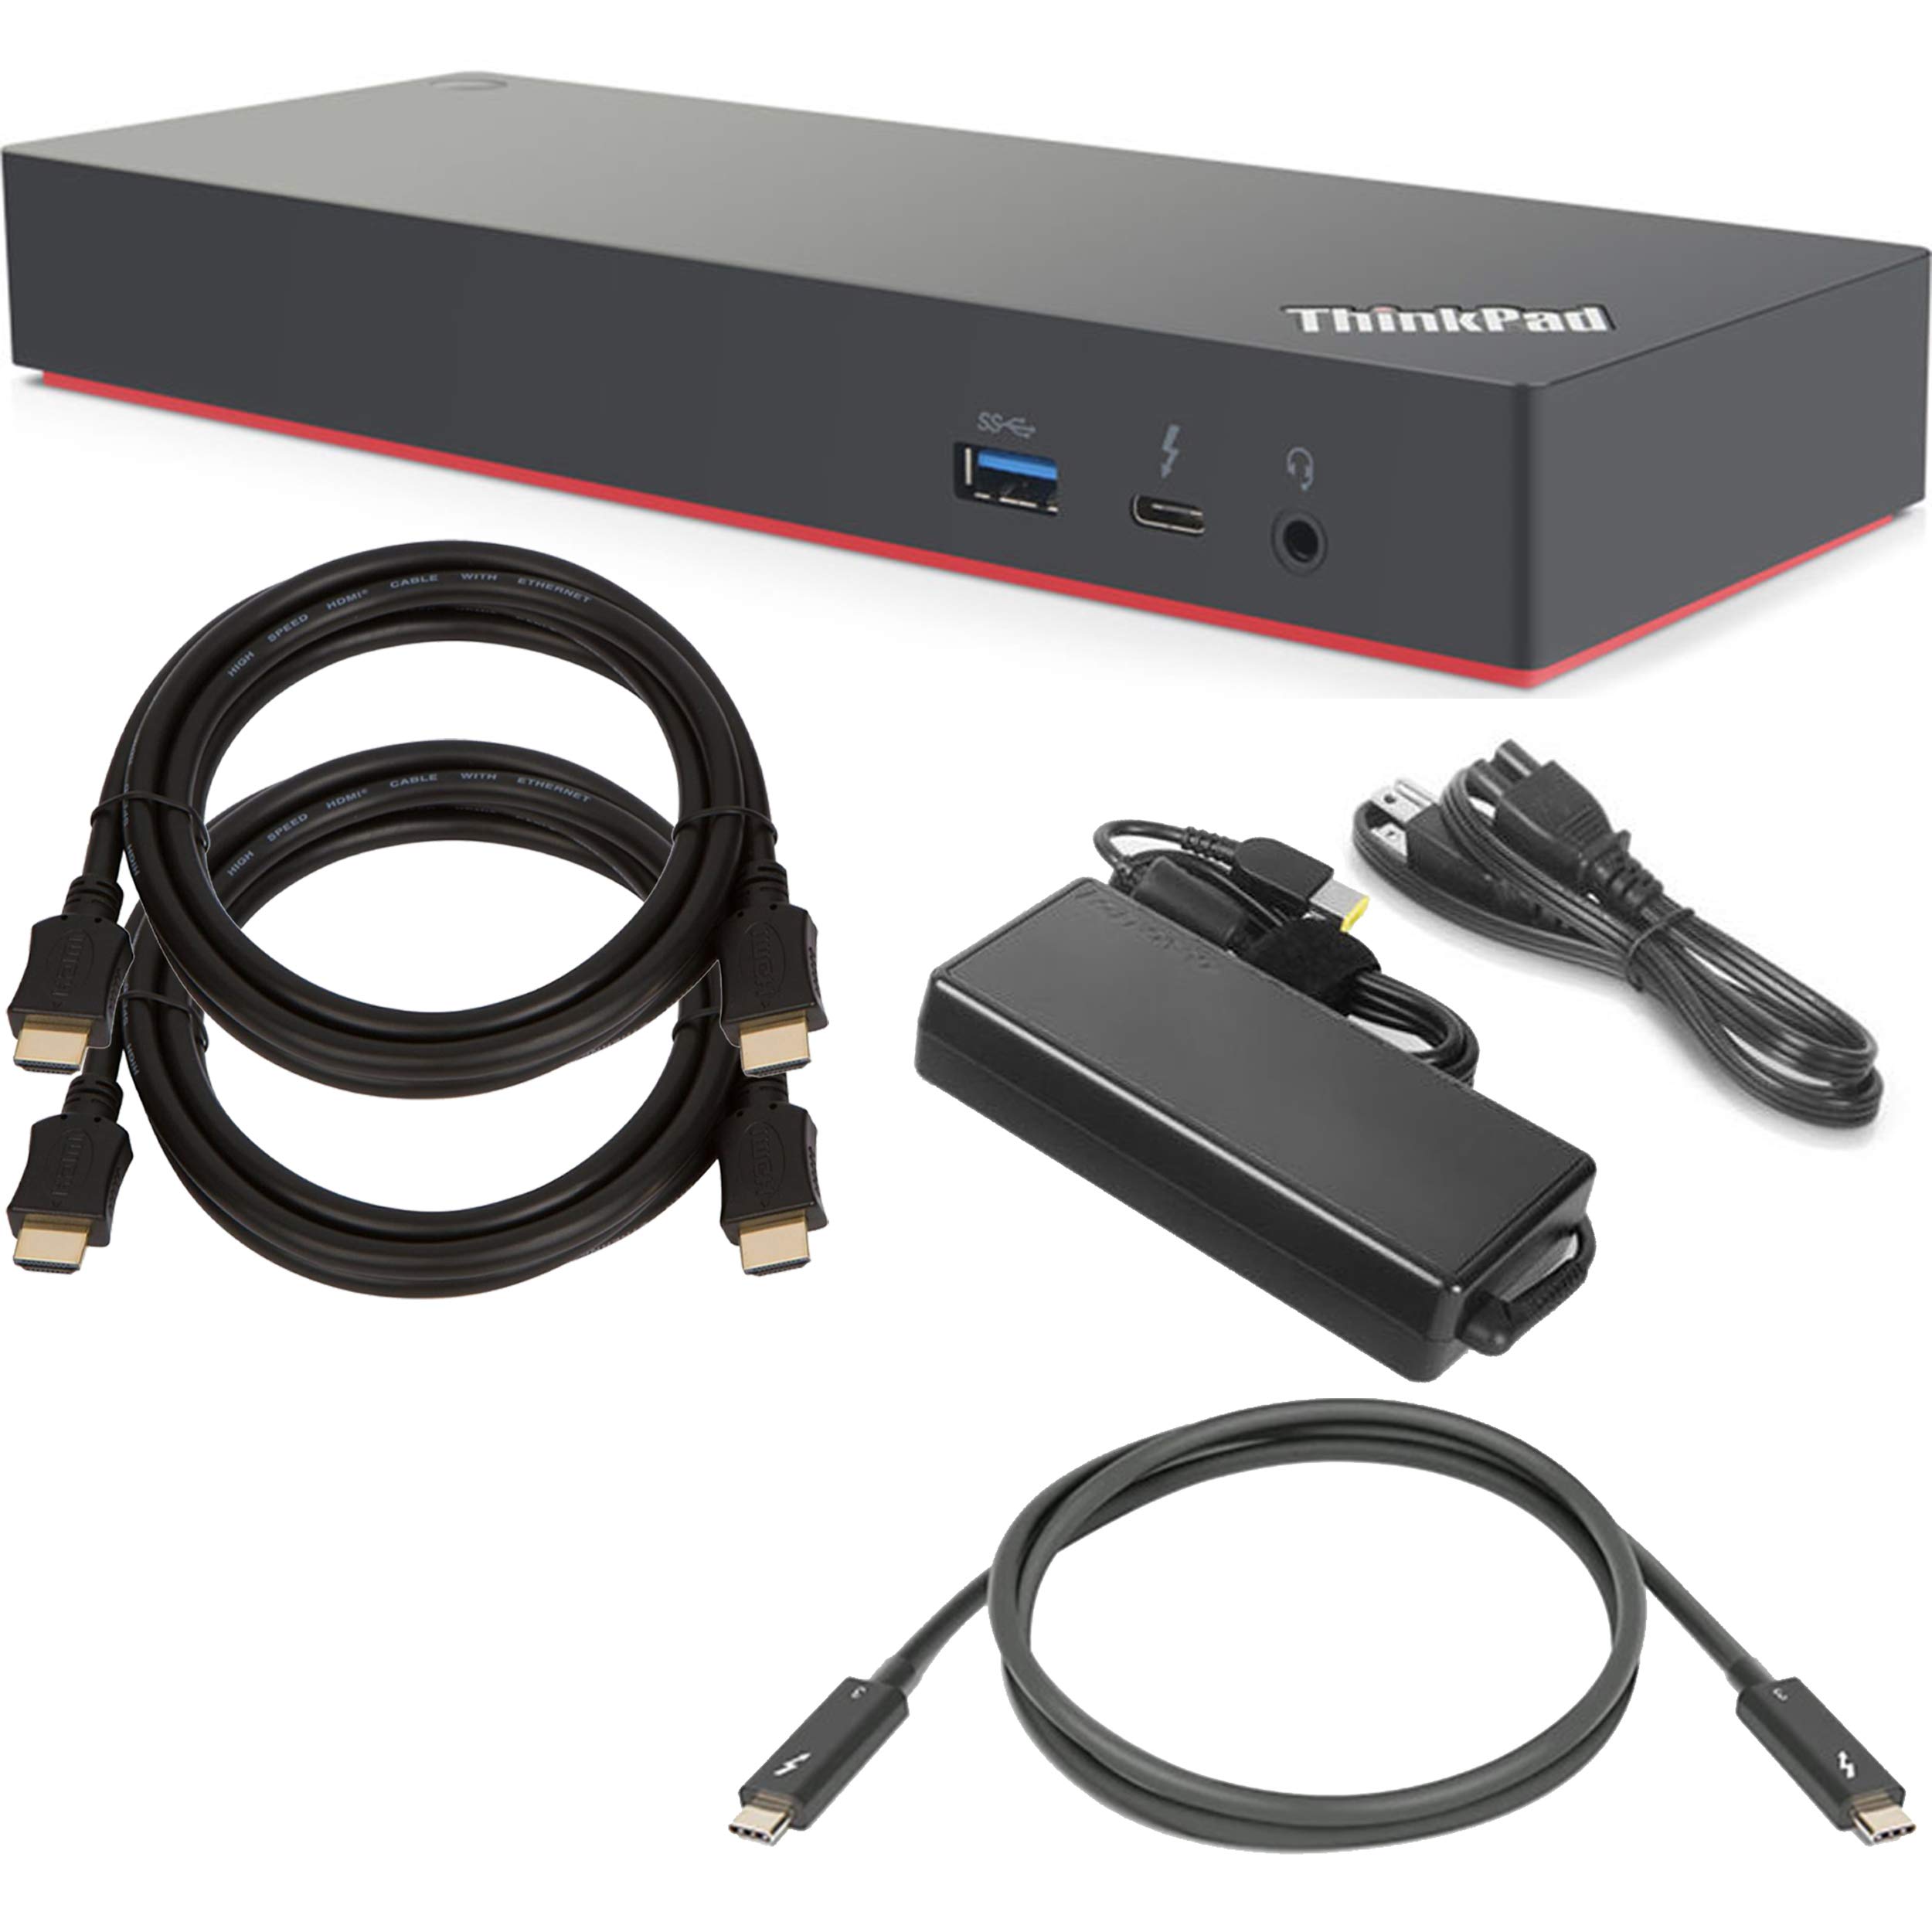 ShopSmart Deals Lenovo ThinkPad Thunderbolt 3 Dock Gen 2 Docking Station (135W) (40AN0135US) + SSD Starter Bundle